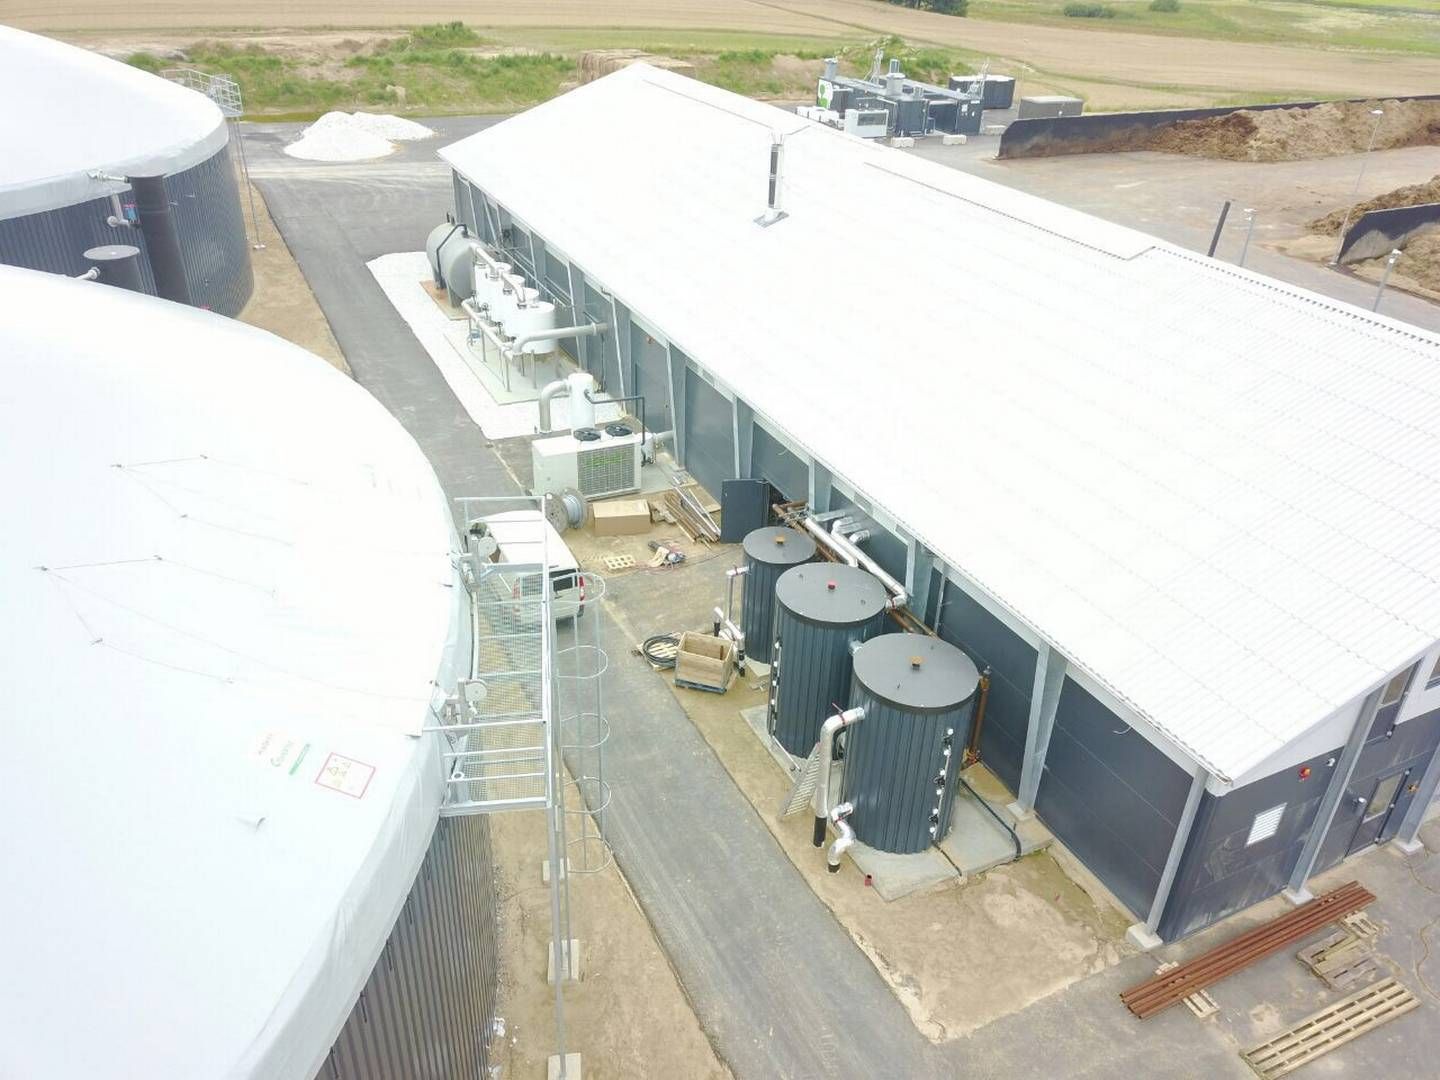 DBC Invest er allerede medejere af Sindal Biogas. Sammen skal de to og GFE Krogenskær bygge Nordjyllands største biogasanlæg. | Foto: Dbc Invest / Pr